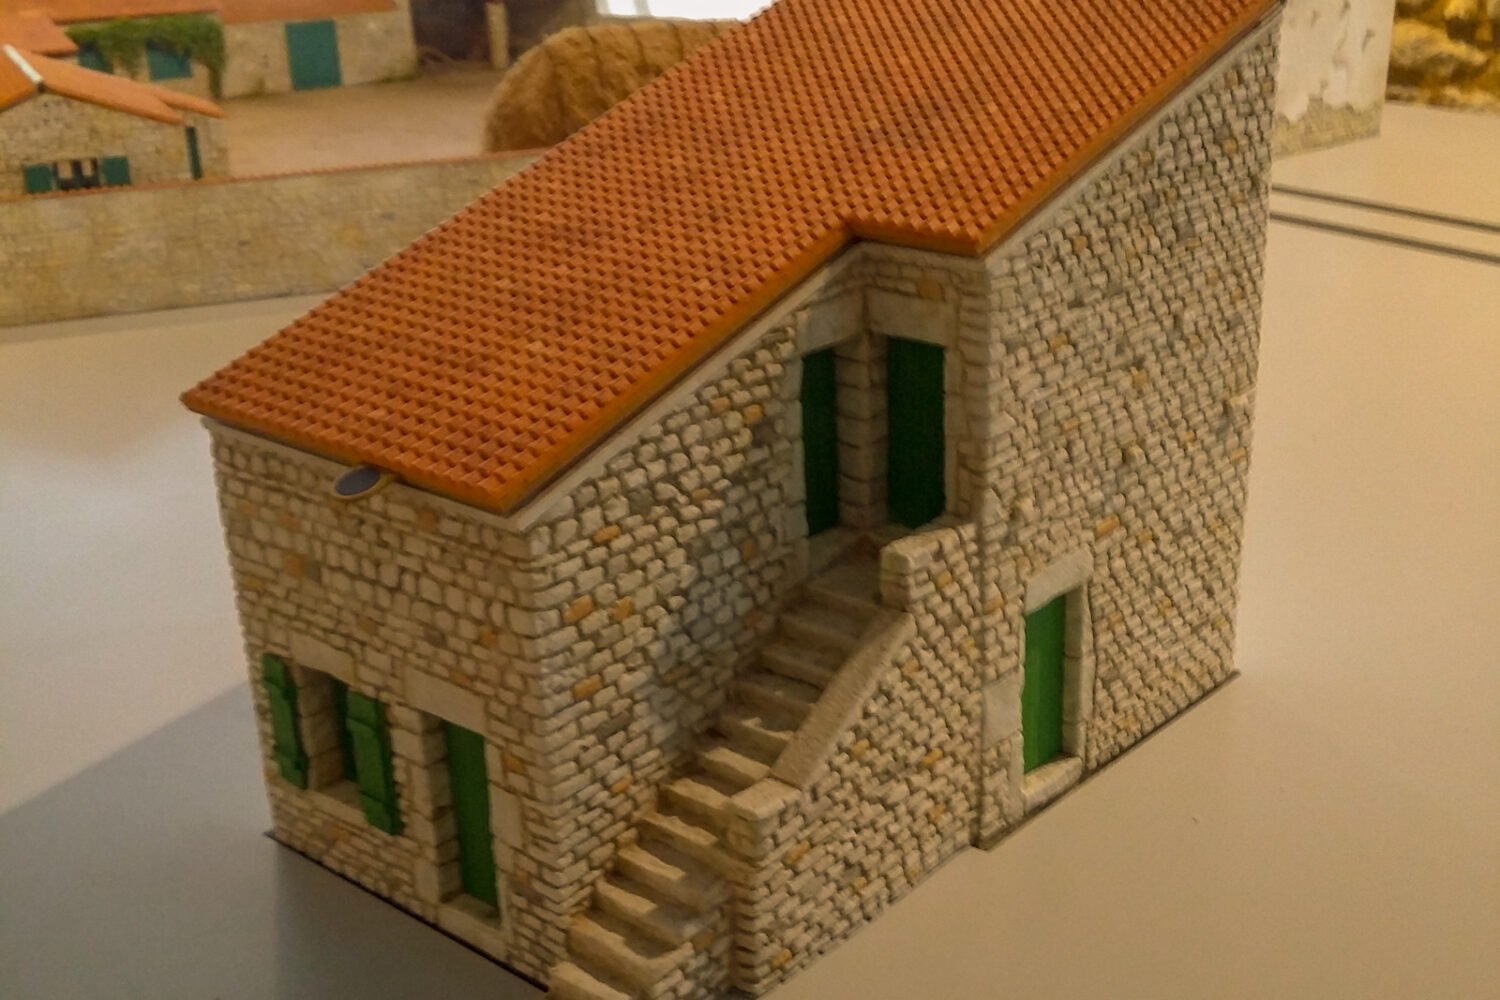 Maquette de reconstution d'une maison à escalier extérieur